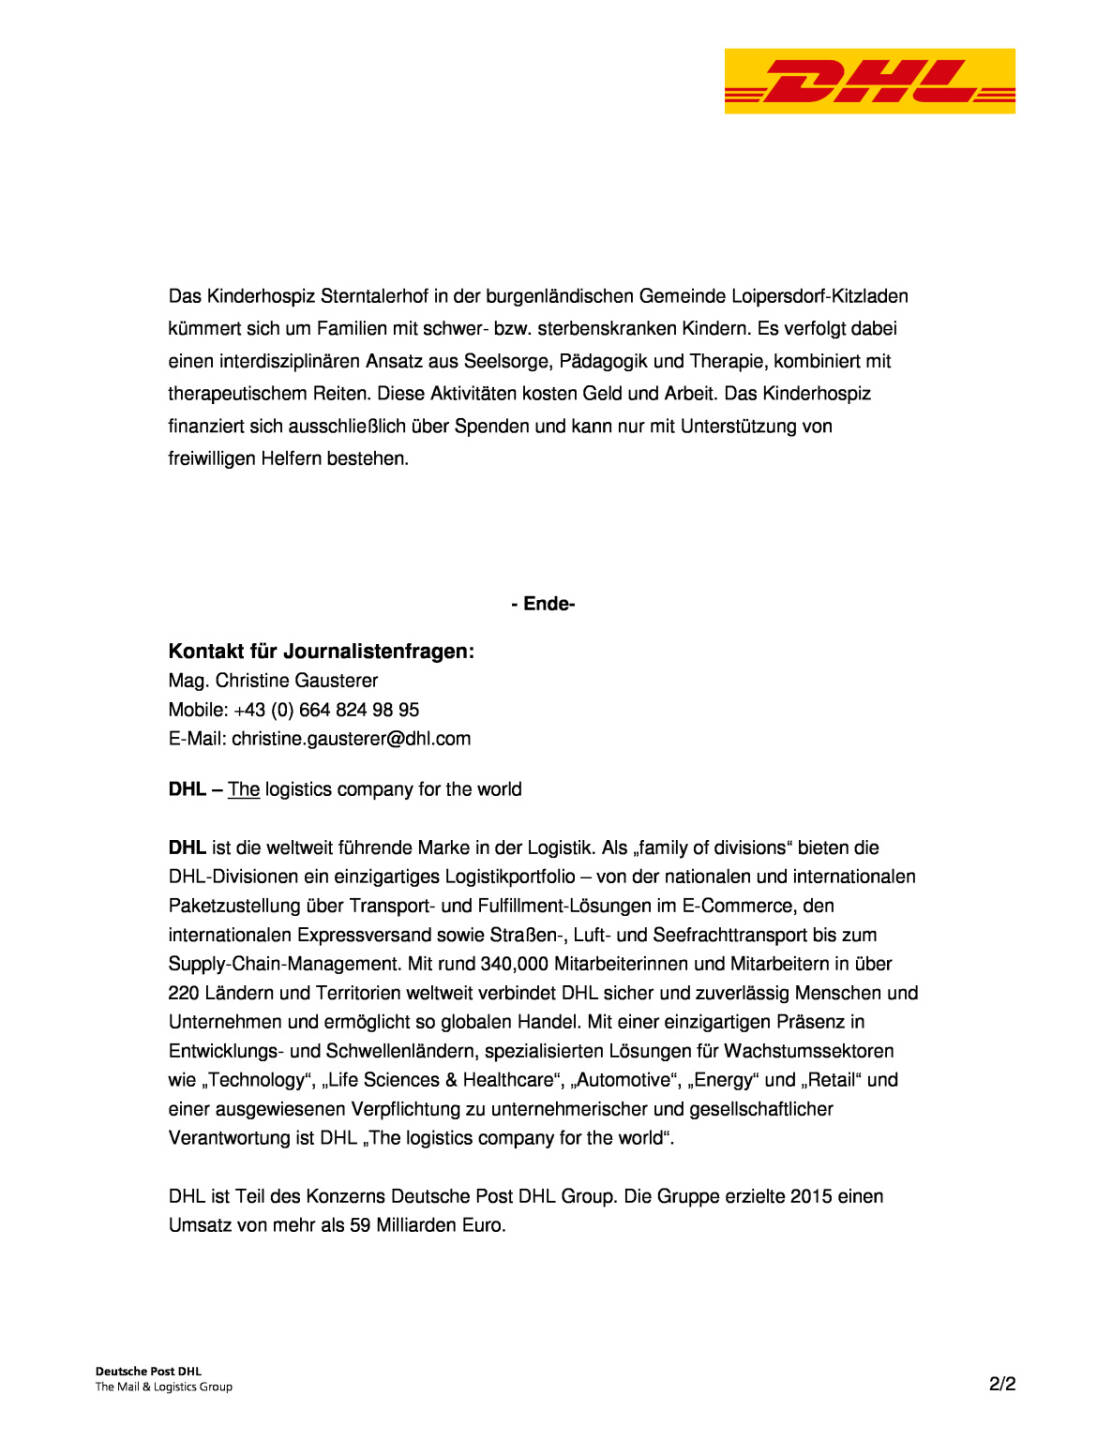 DHL Express Österreich Mitarbeiter: Spende für Sterntalerhof , Seite 2/2, komplettes Dokument unter http://boerse-social.com/static/uploads/file_1862_dhl_express_osterreich_mitarbeiter_spende_fur_sterntalerhof.pdf